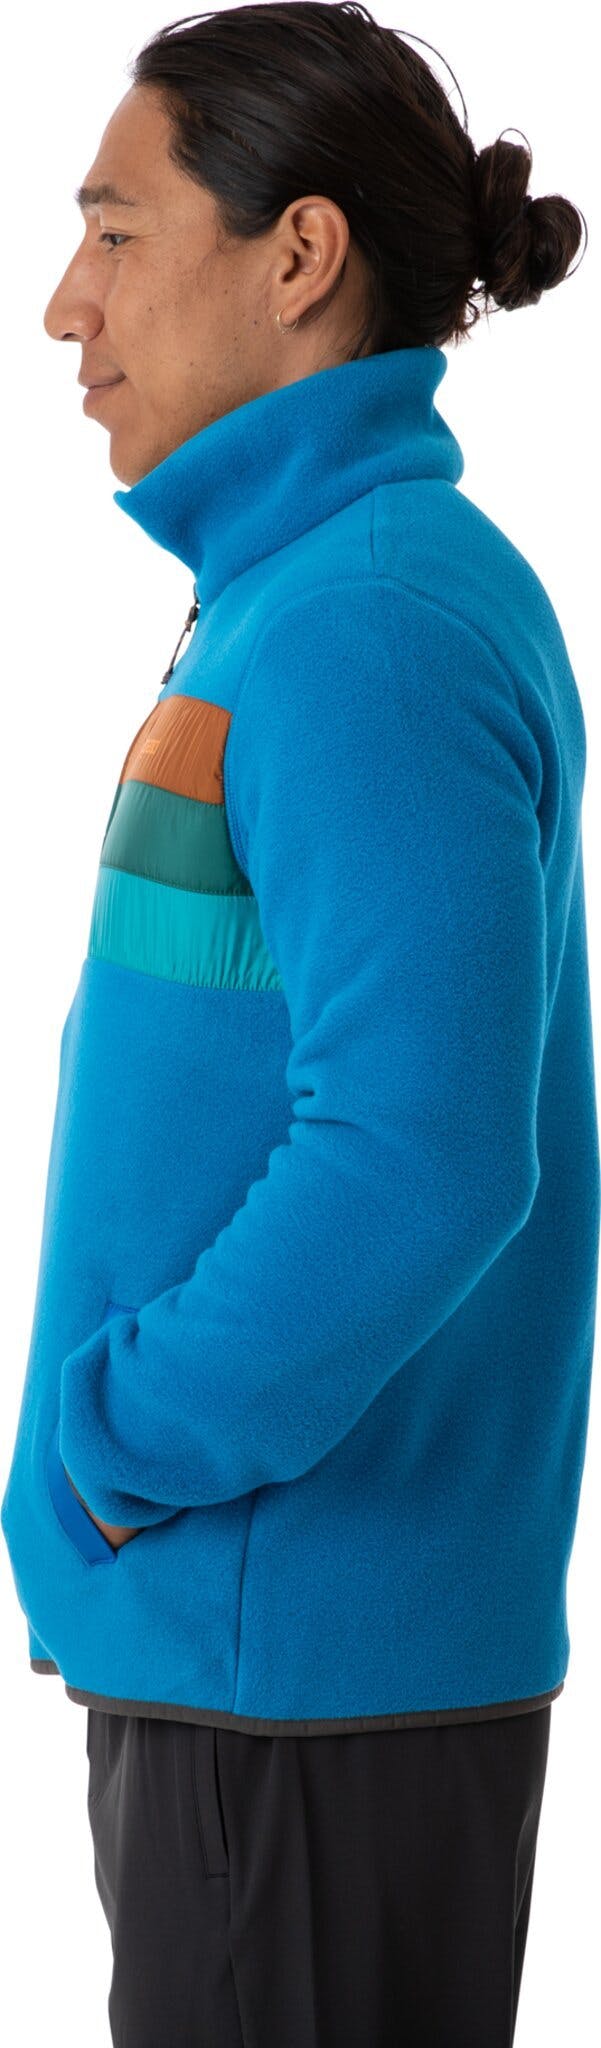 Product gallery image number 2 for product Teca Full Zip Fleece Sweatshirt - Men's